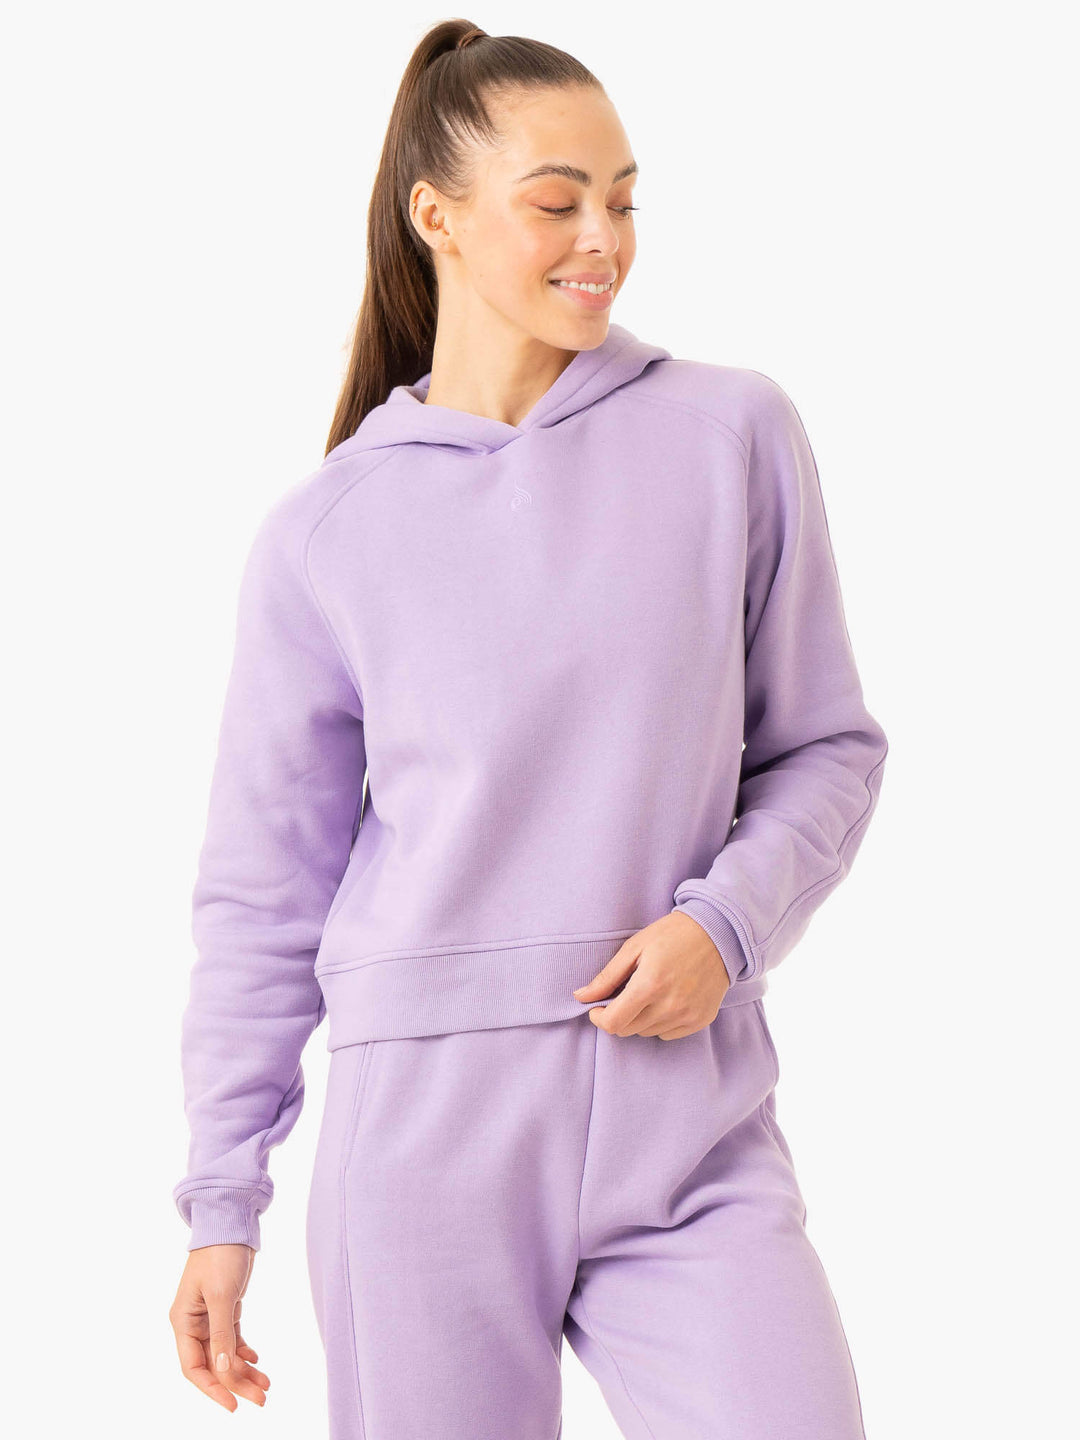 Sideline Hoodie - Lilac - Ryderwear